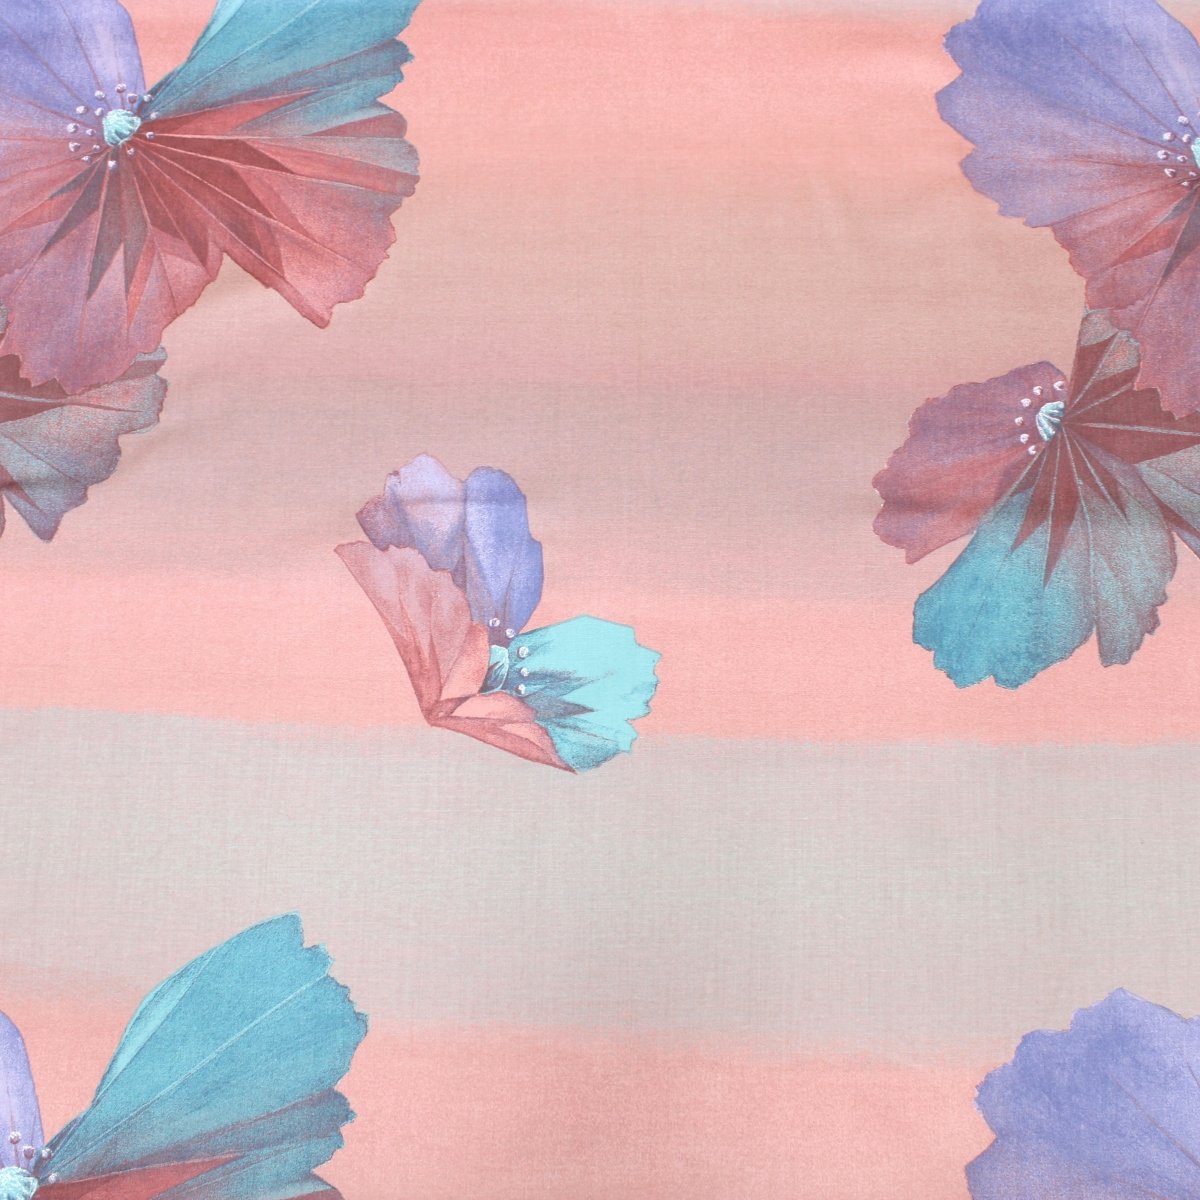 3 Metre Designer Floral Cotton Canvas 55" Wide Dusky Pink - Pound A Metre